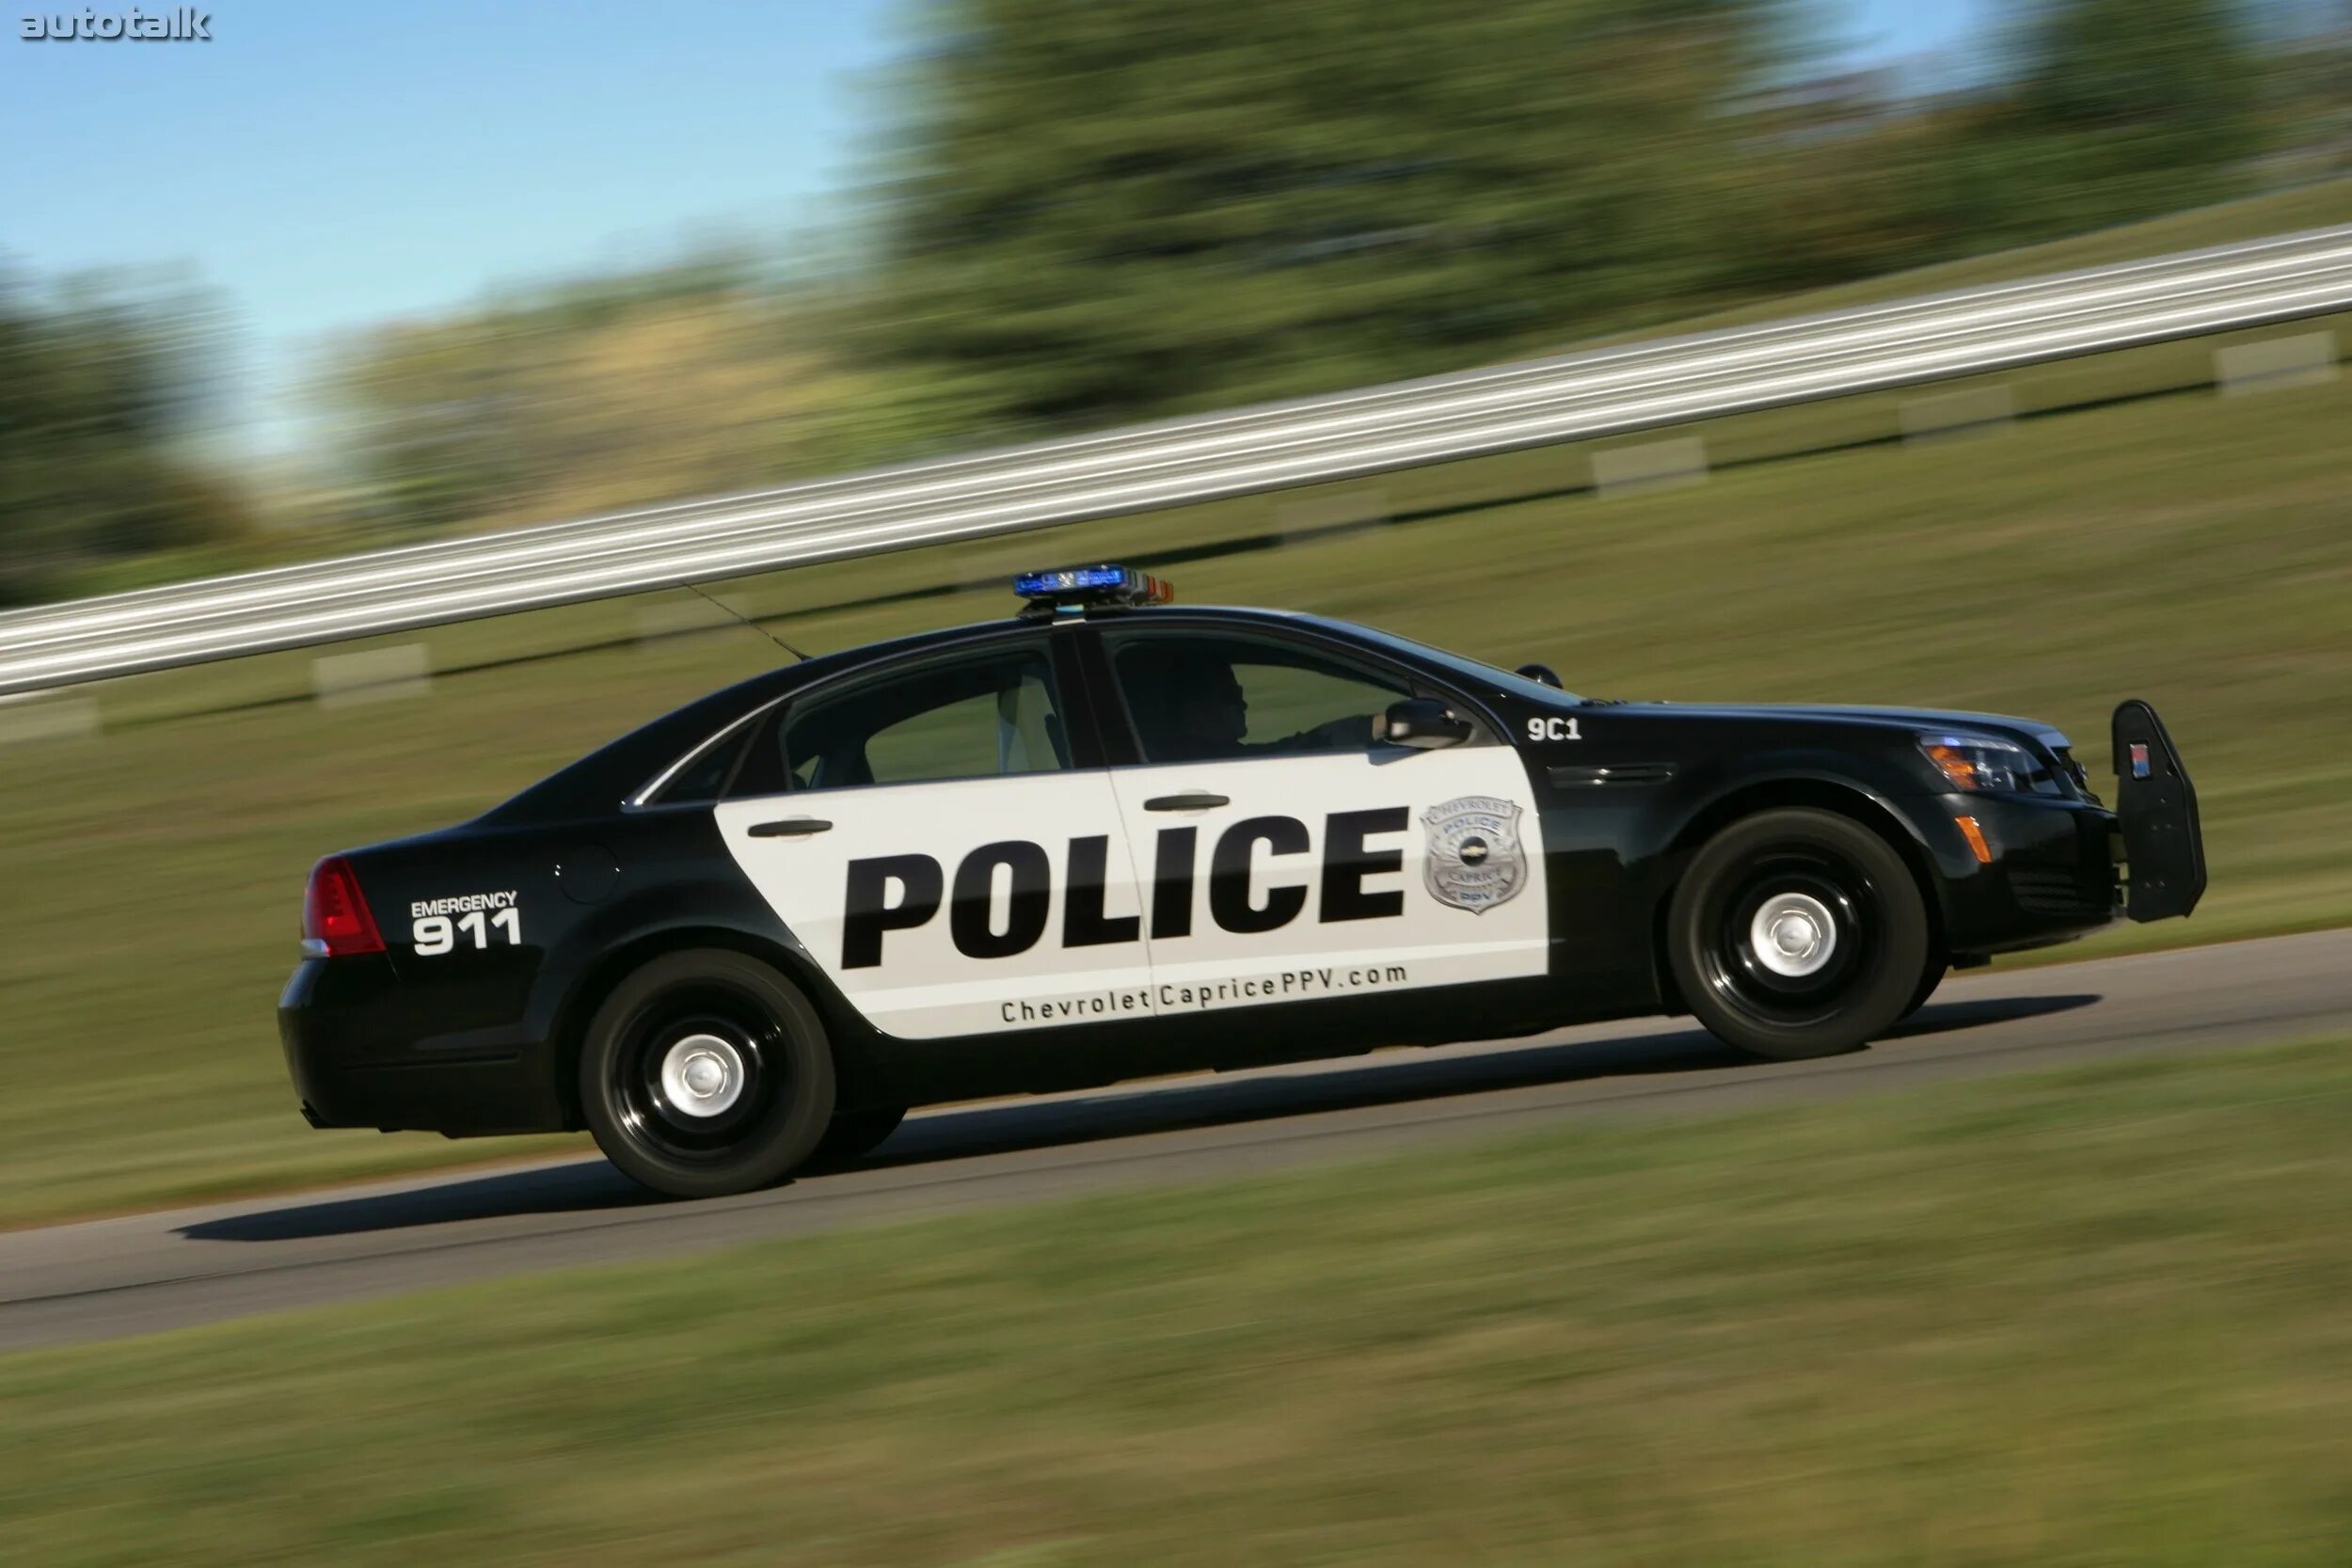 Полицейская машина 7 букв. Chevrolet Caprice Police 2010. Chevrolet Caprice Police Patrol vehicle. Chevrolet Caprice Police car. Chevrolet Caprice 9c1 и PPV..